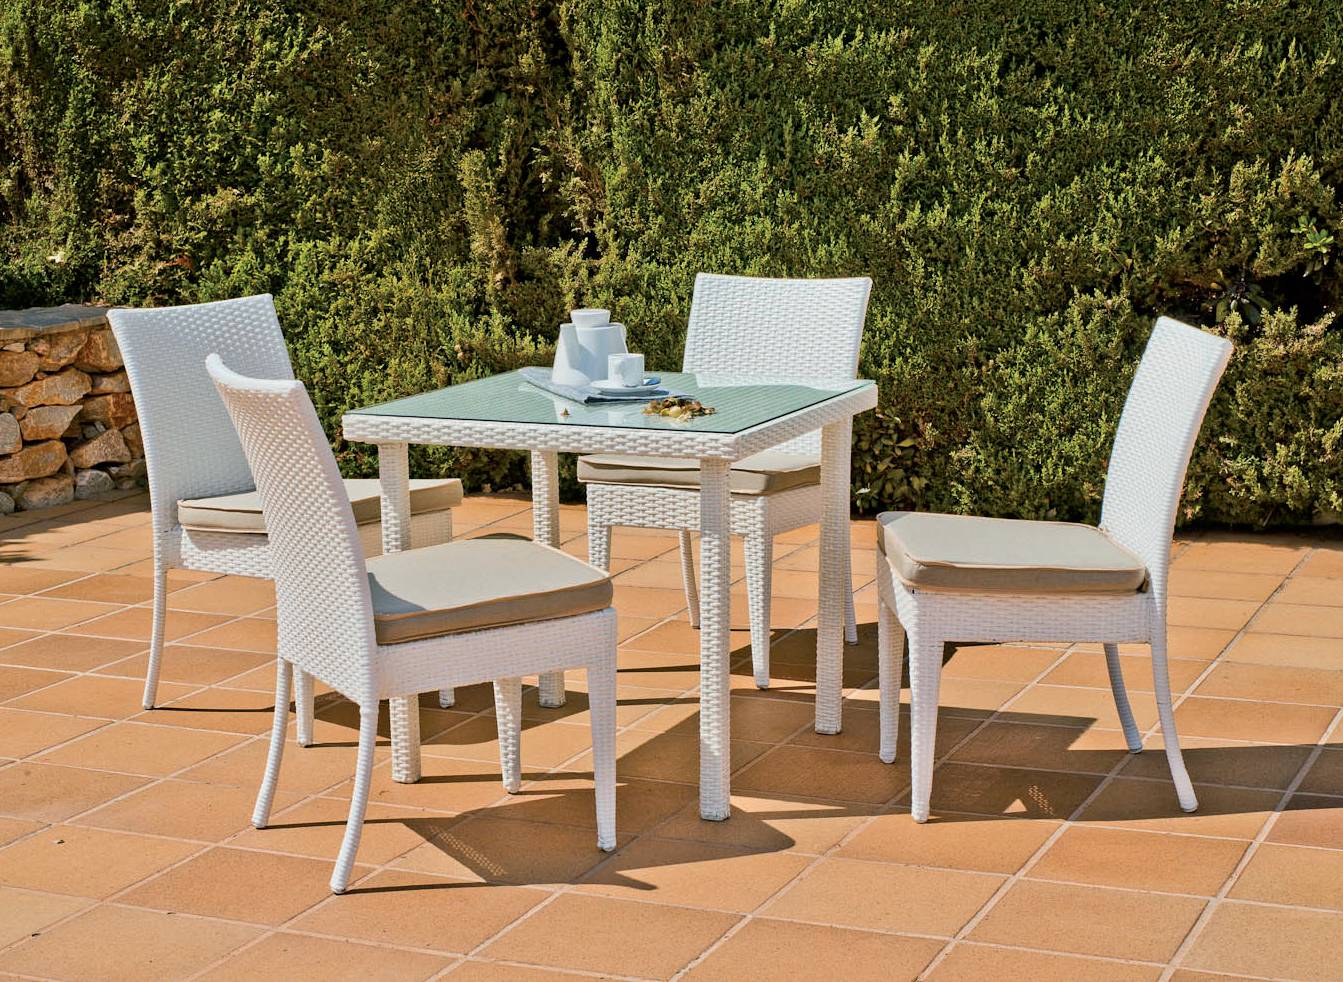 Conjunto de jardín: mesa cuadrada de 80 cm. con tapa de cristal templado y 4 sillas con cojines